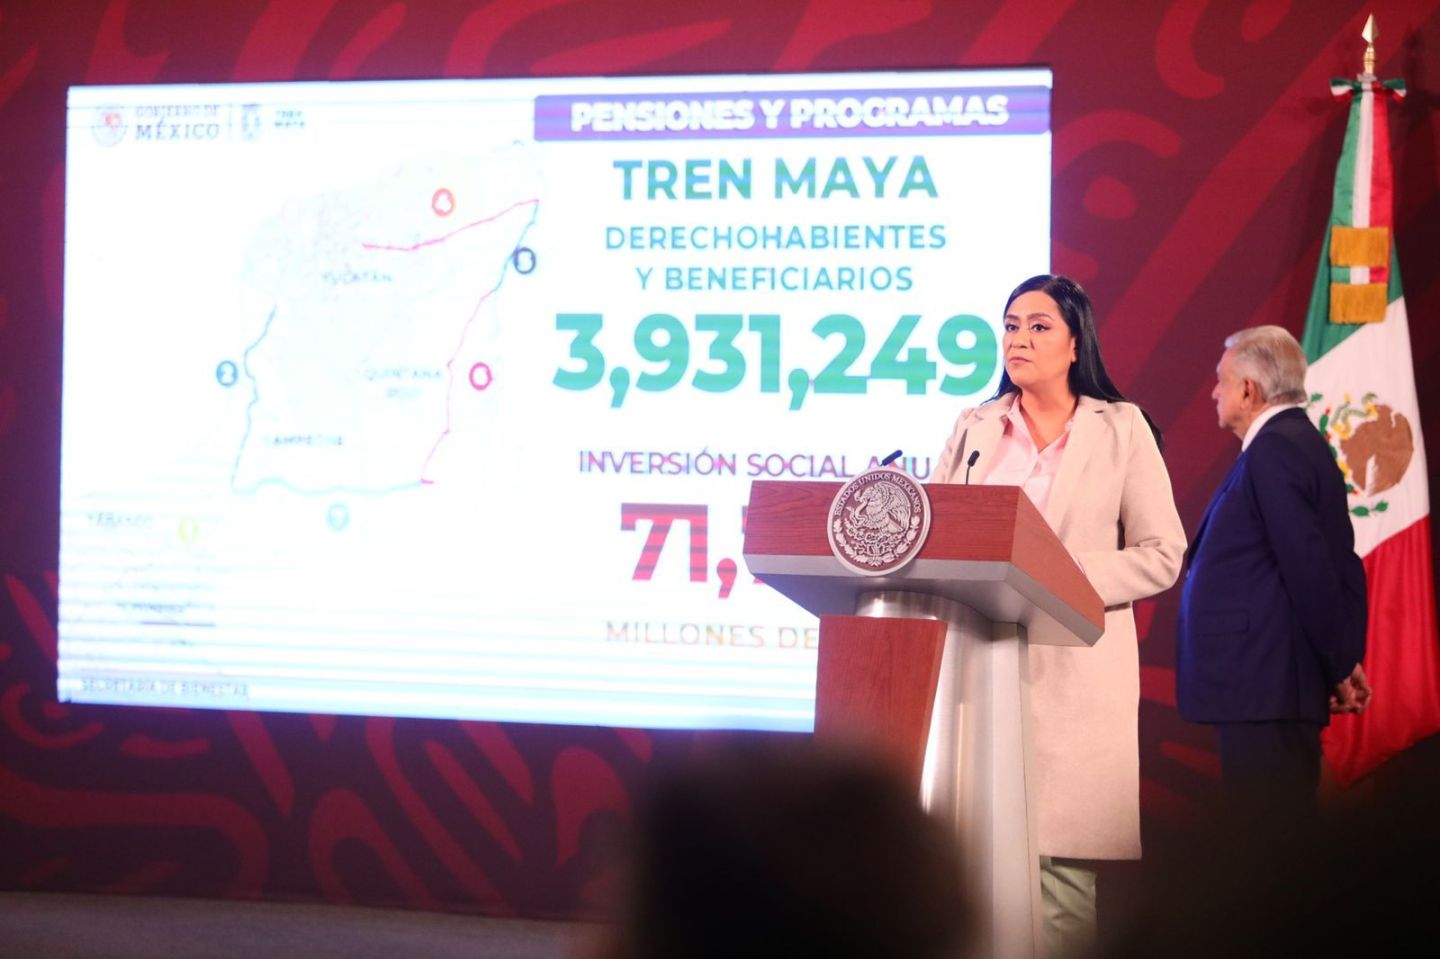 3.9 millones personas reciben Pensiones y Programas de Bienestar en comunidades donde transitará Tren Maya 